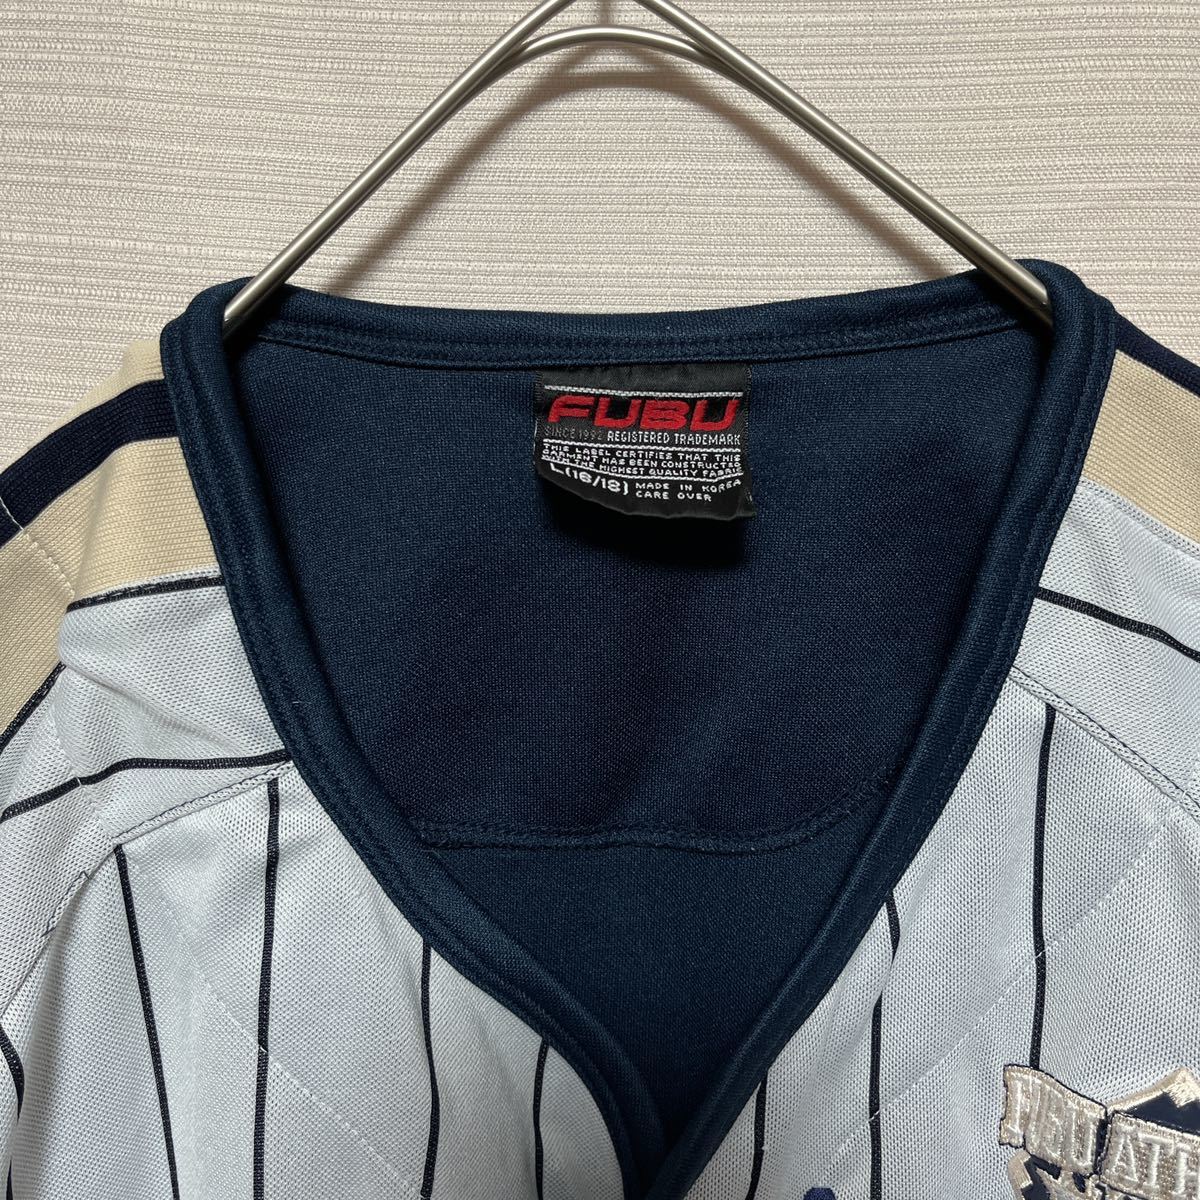 ルカリ】 90s fubu ベースボールシャツ ゲームシャツ B系 ewfjy 